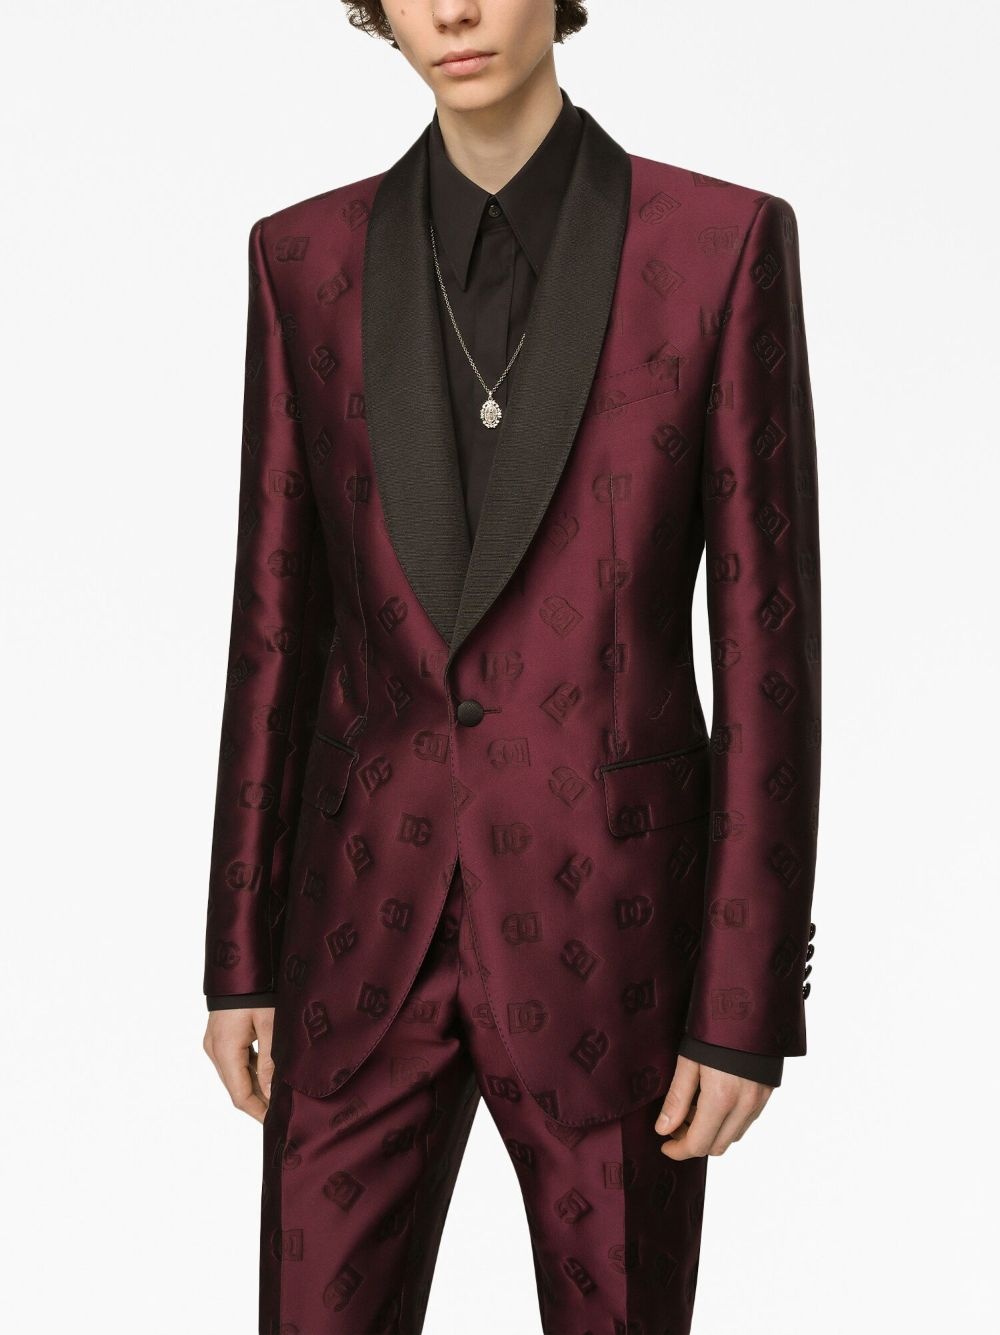 monogram-jacquard tuxedo suit - 4